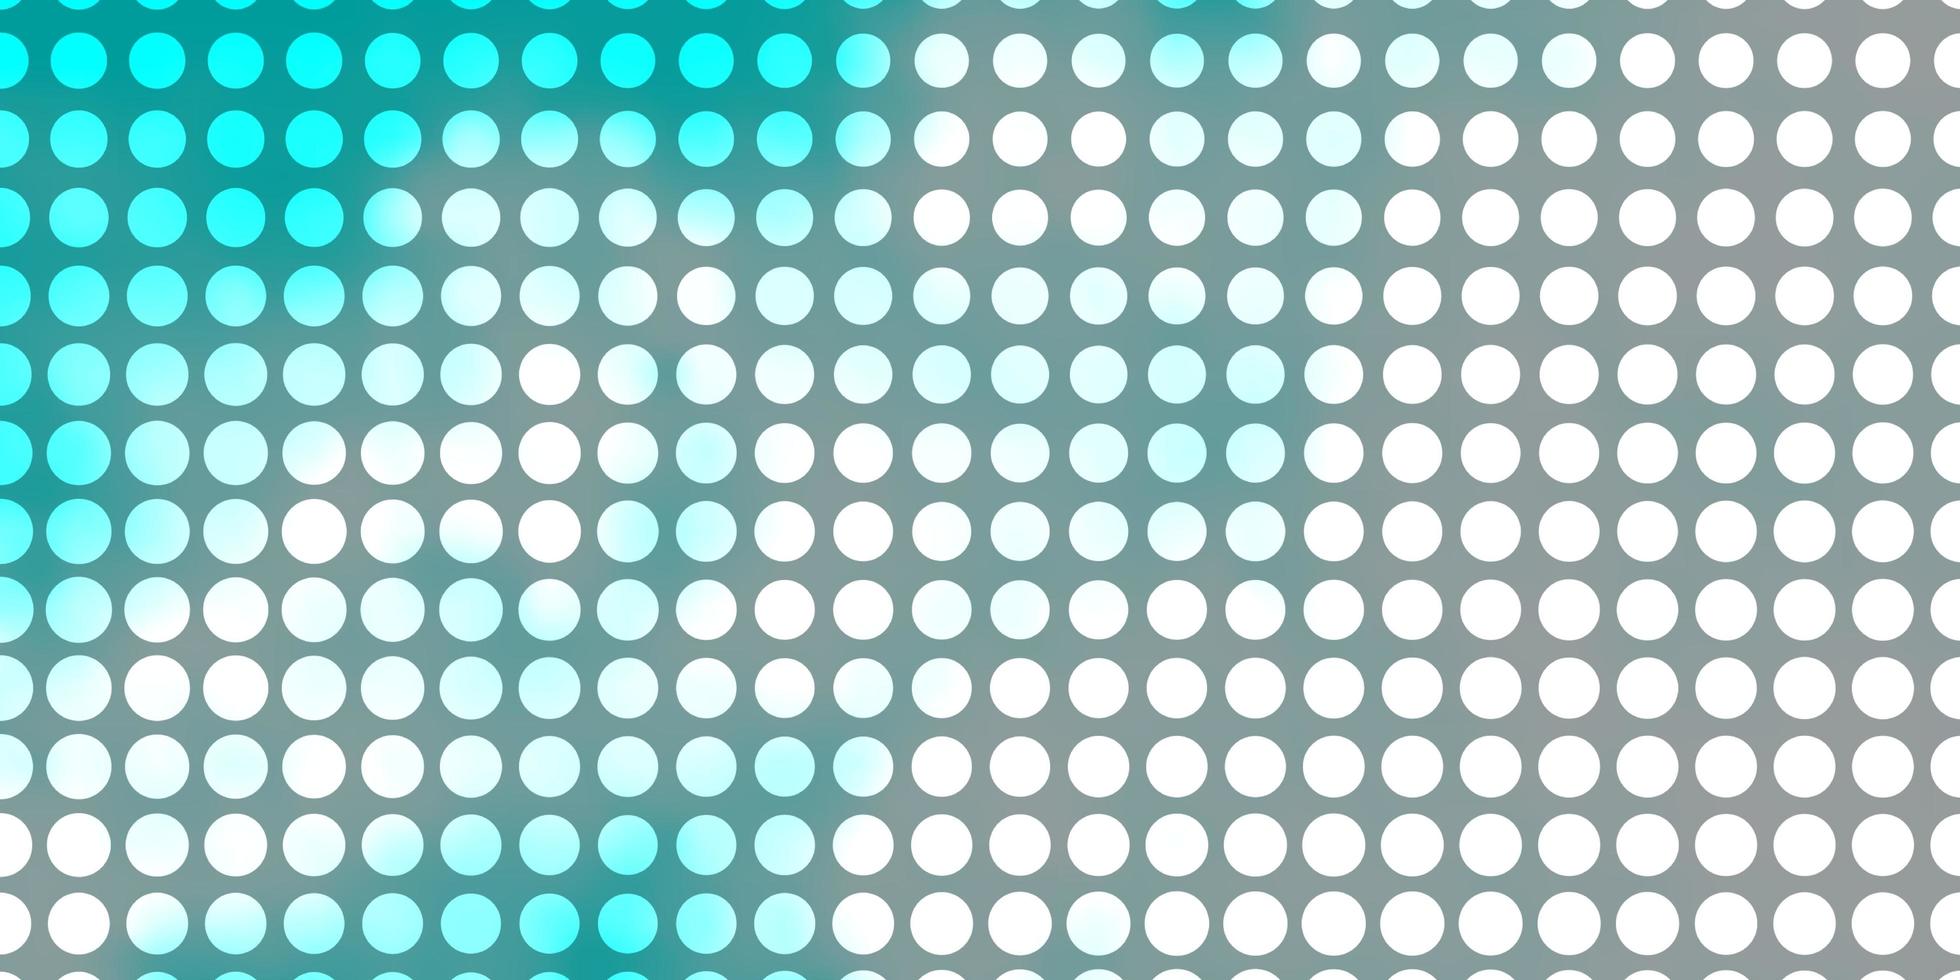 toile de fond vecteur bleu clair avec des cercles illustration abstraite avec des taches colorées dans le modèle de style nature pour les brochures dépliants